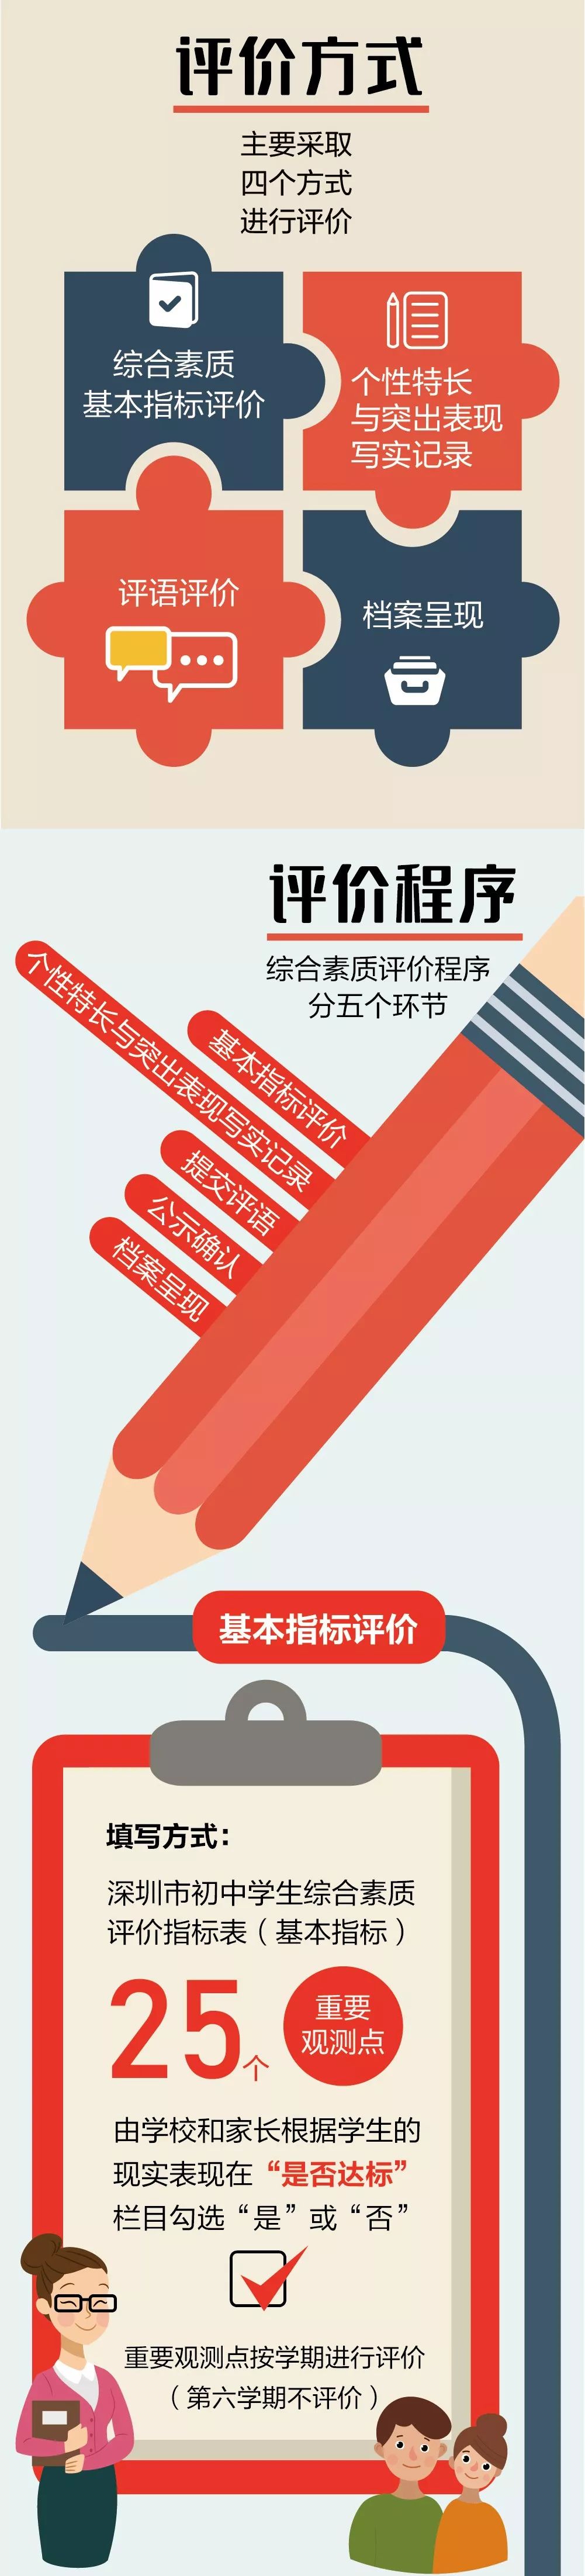 深圳市初中学生综合素质评价方案（试行）（修订征求意见稿）公布！